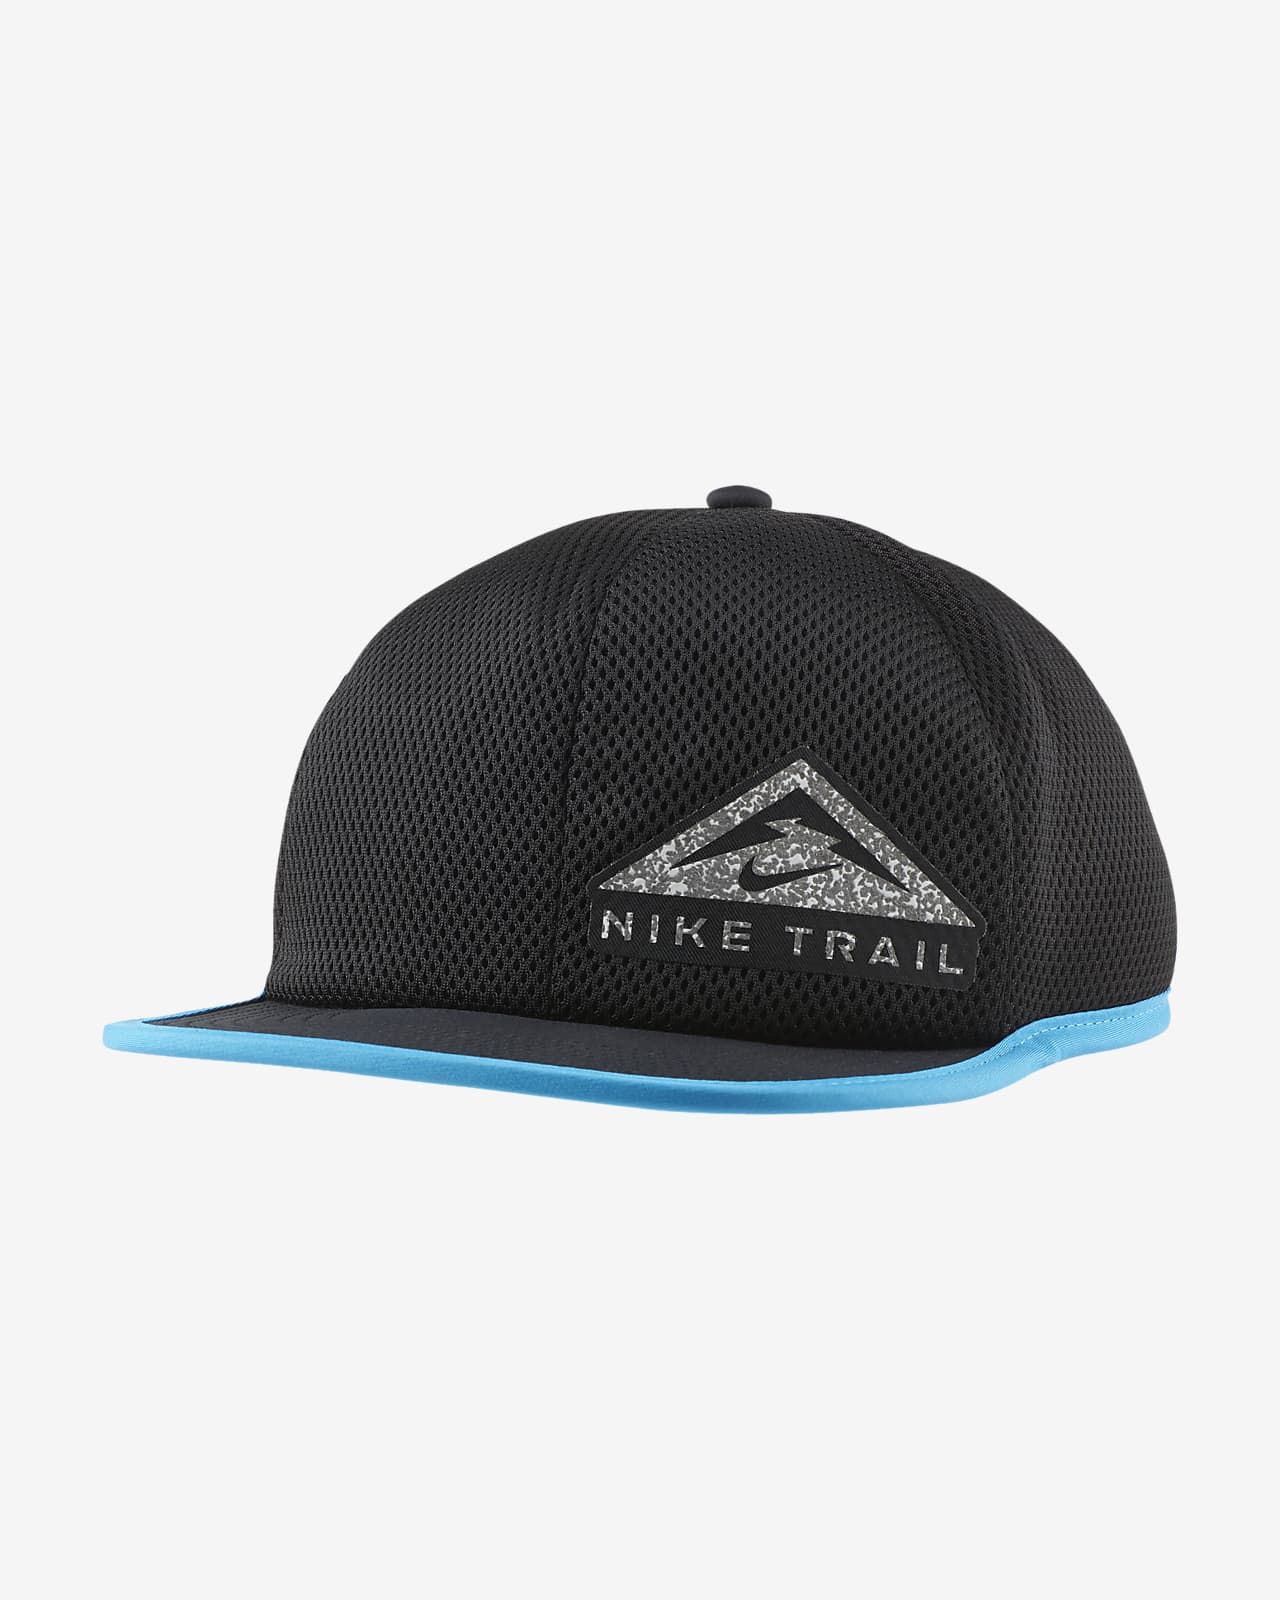 nike trail hat